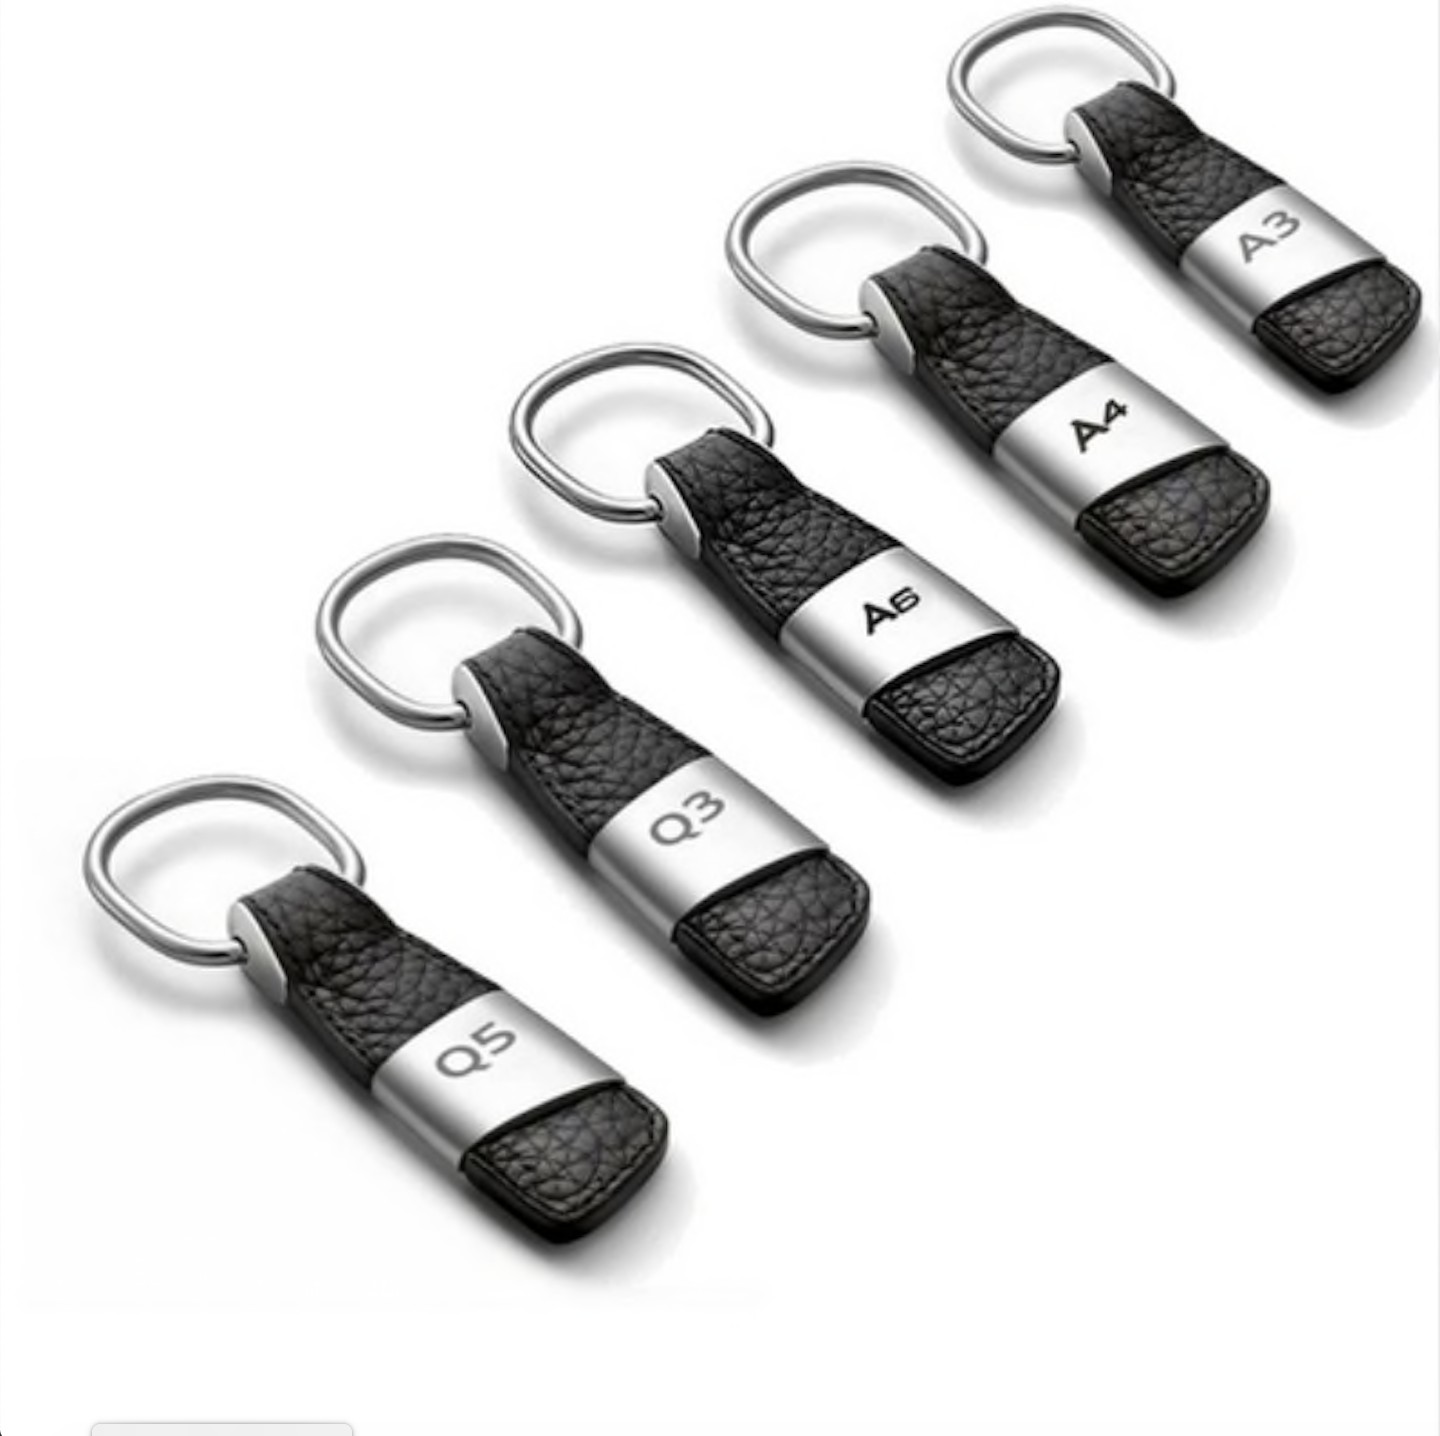 Porte clé - porte clef Audi - Équipement auto